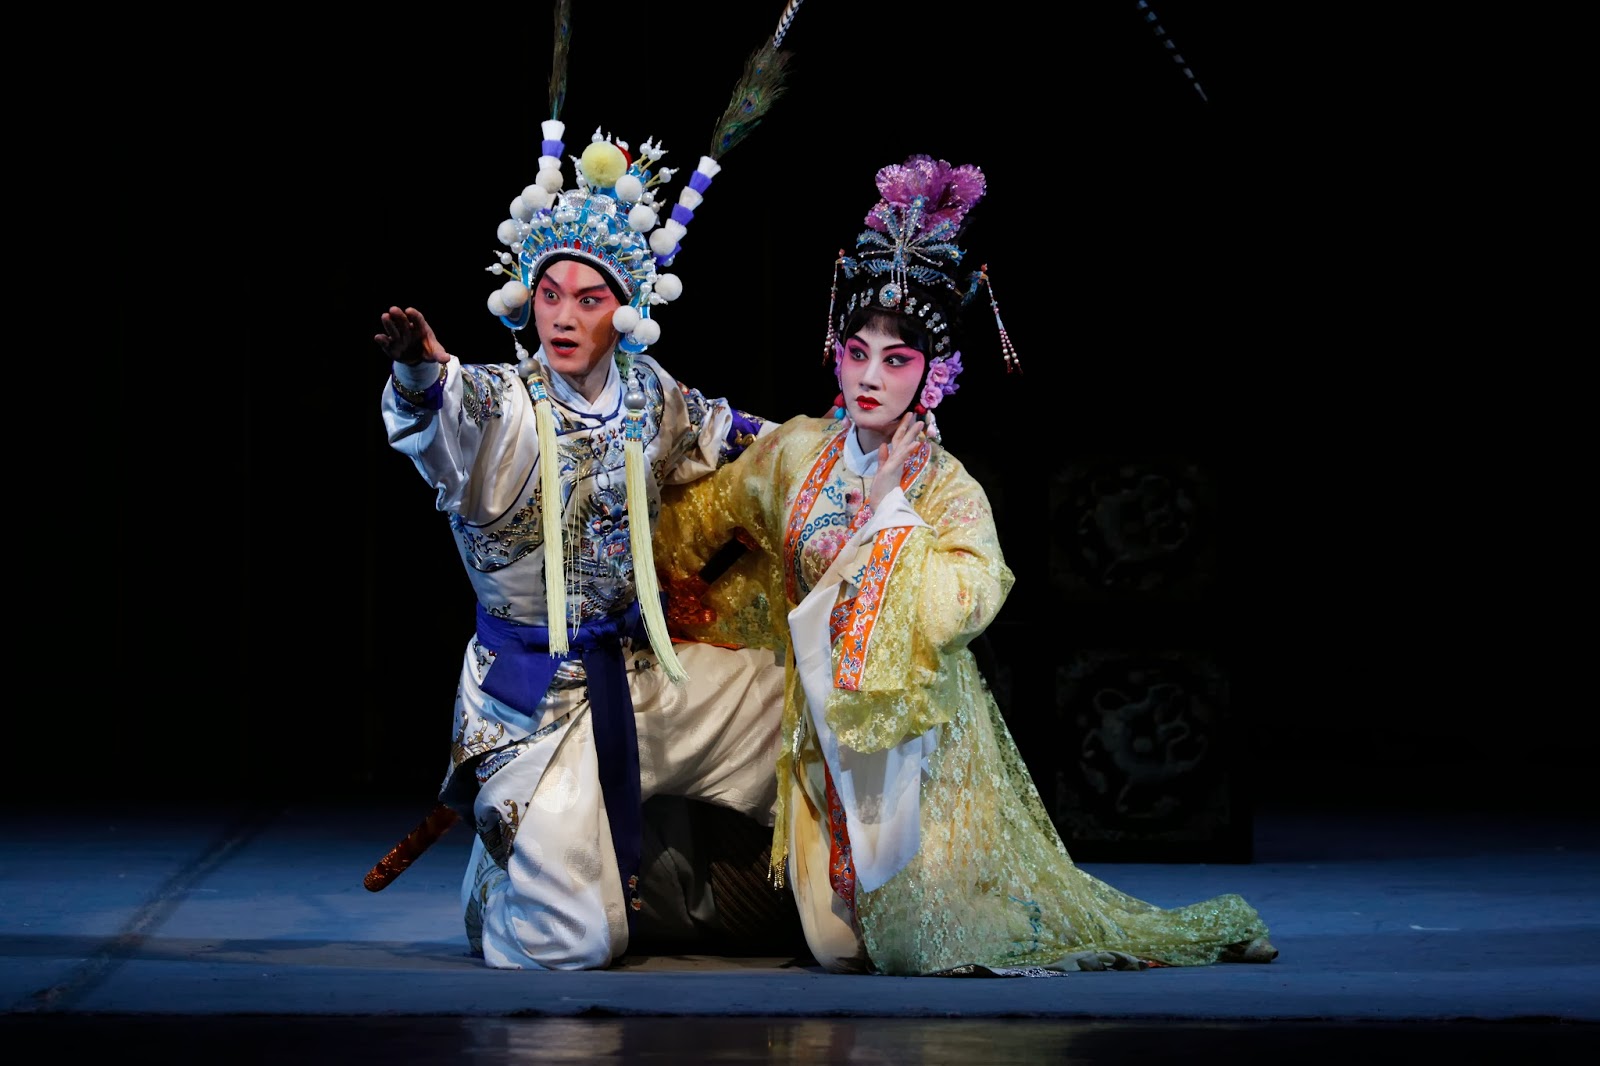 Danse, Opéra, Théâtre, Musique, Folklore et Traditions artistiques chinoises